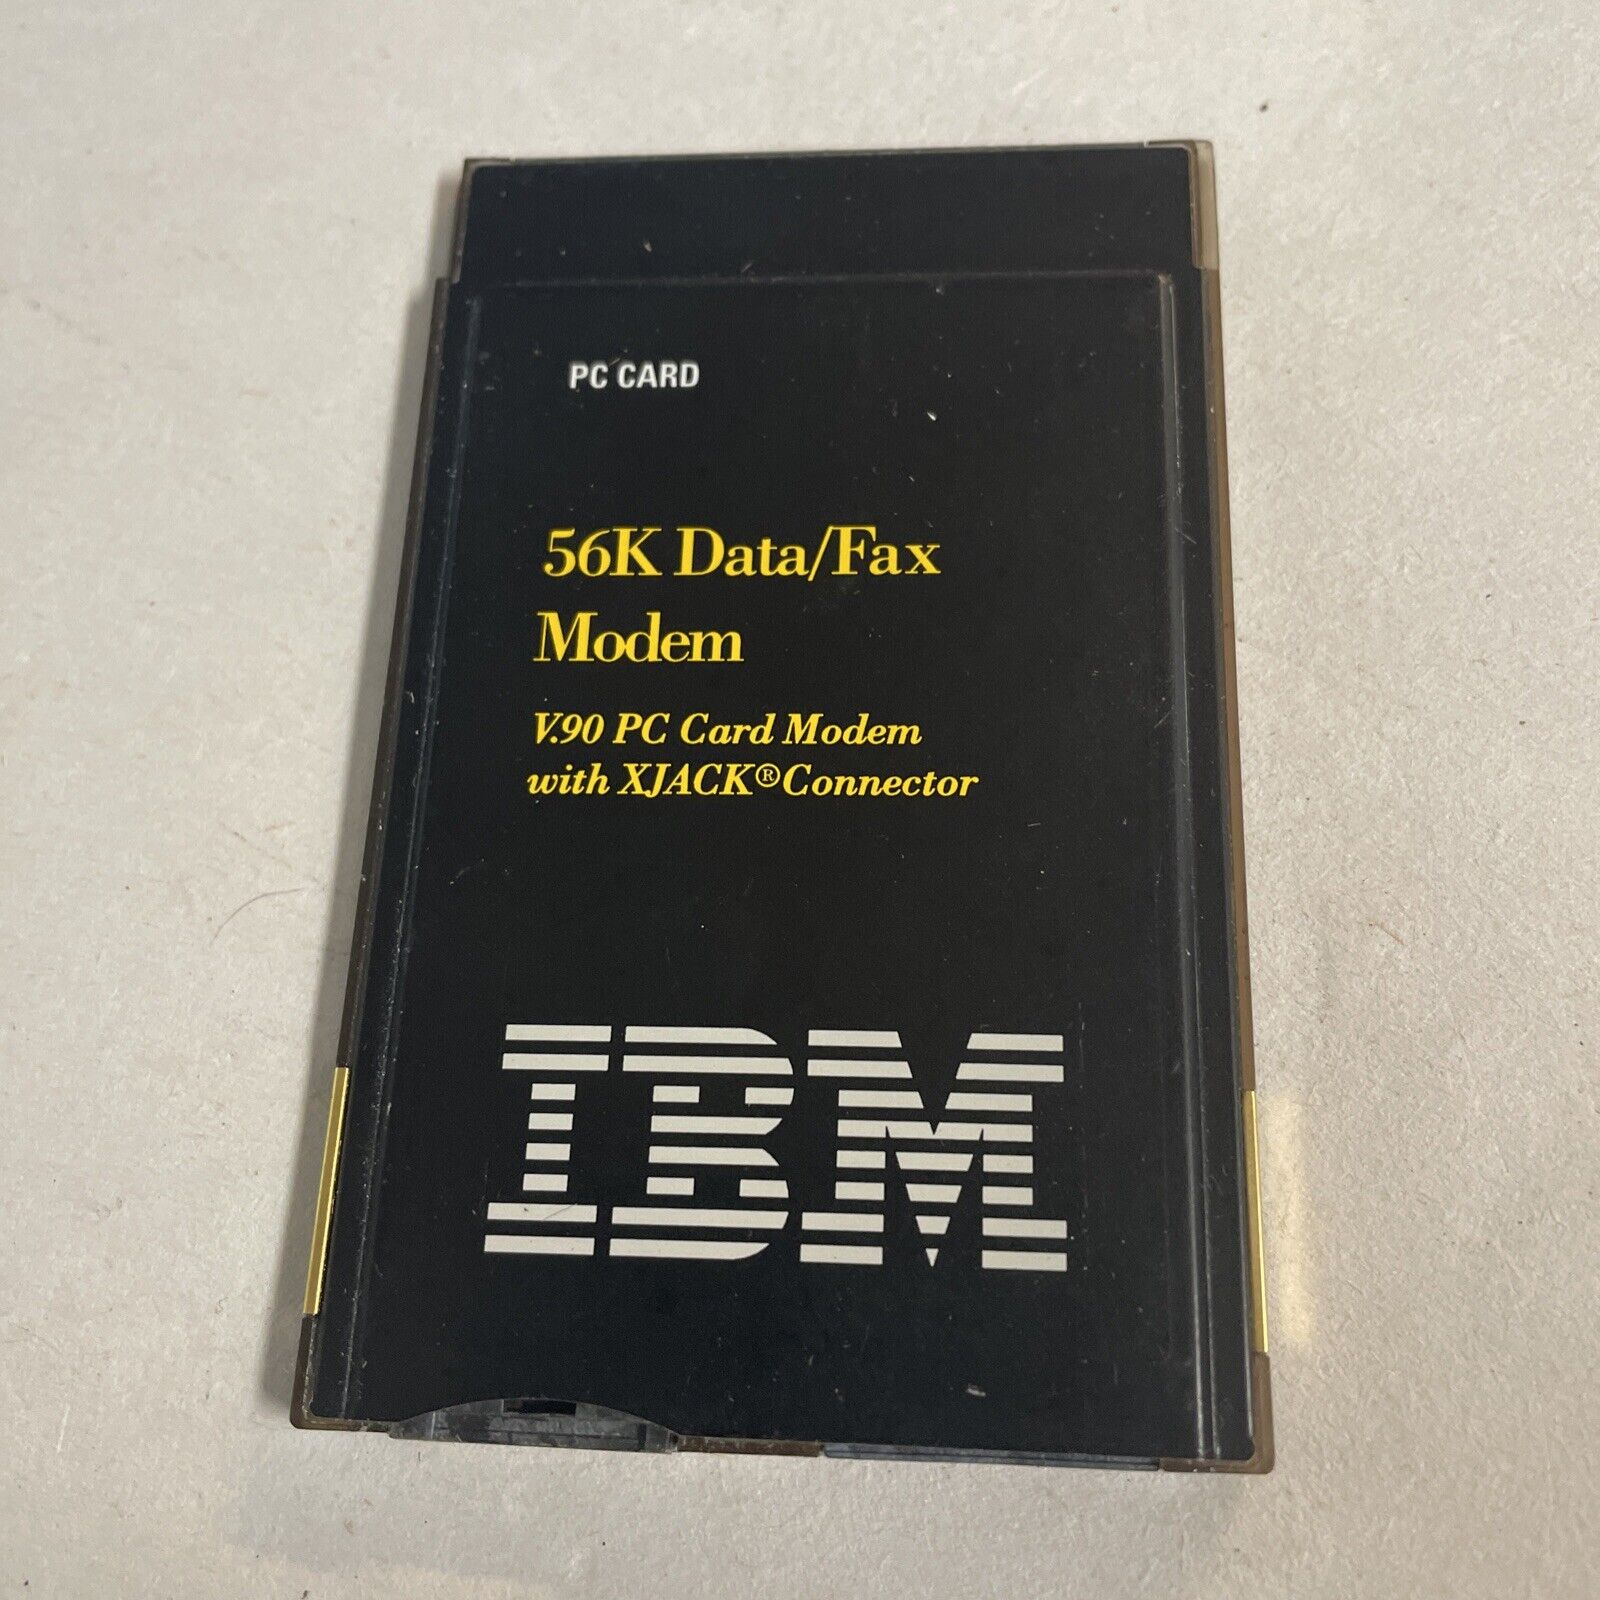 IBM 56K Data Fax Modem PC Card @MB145